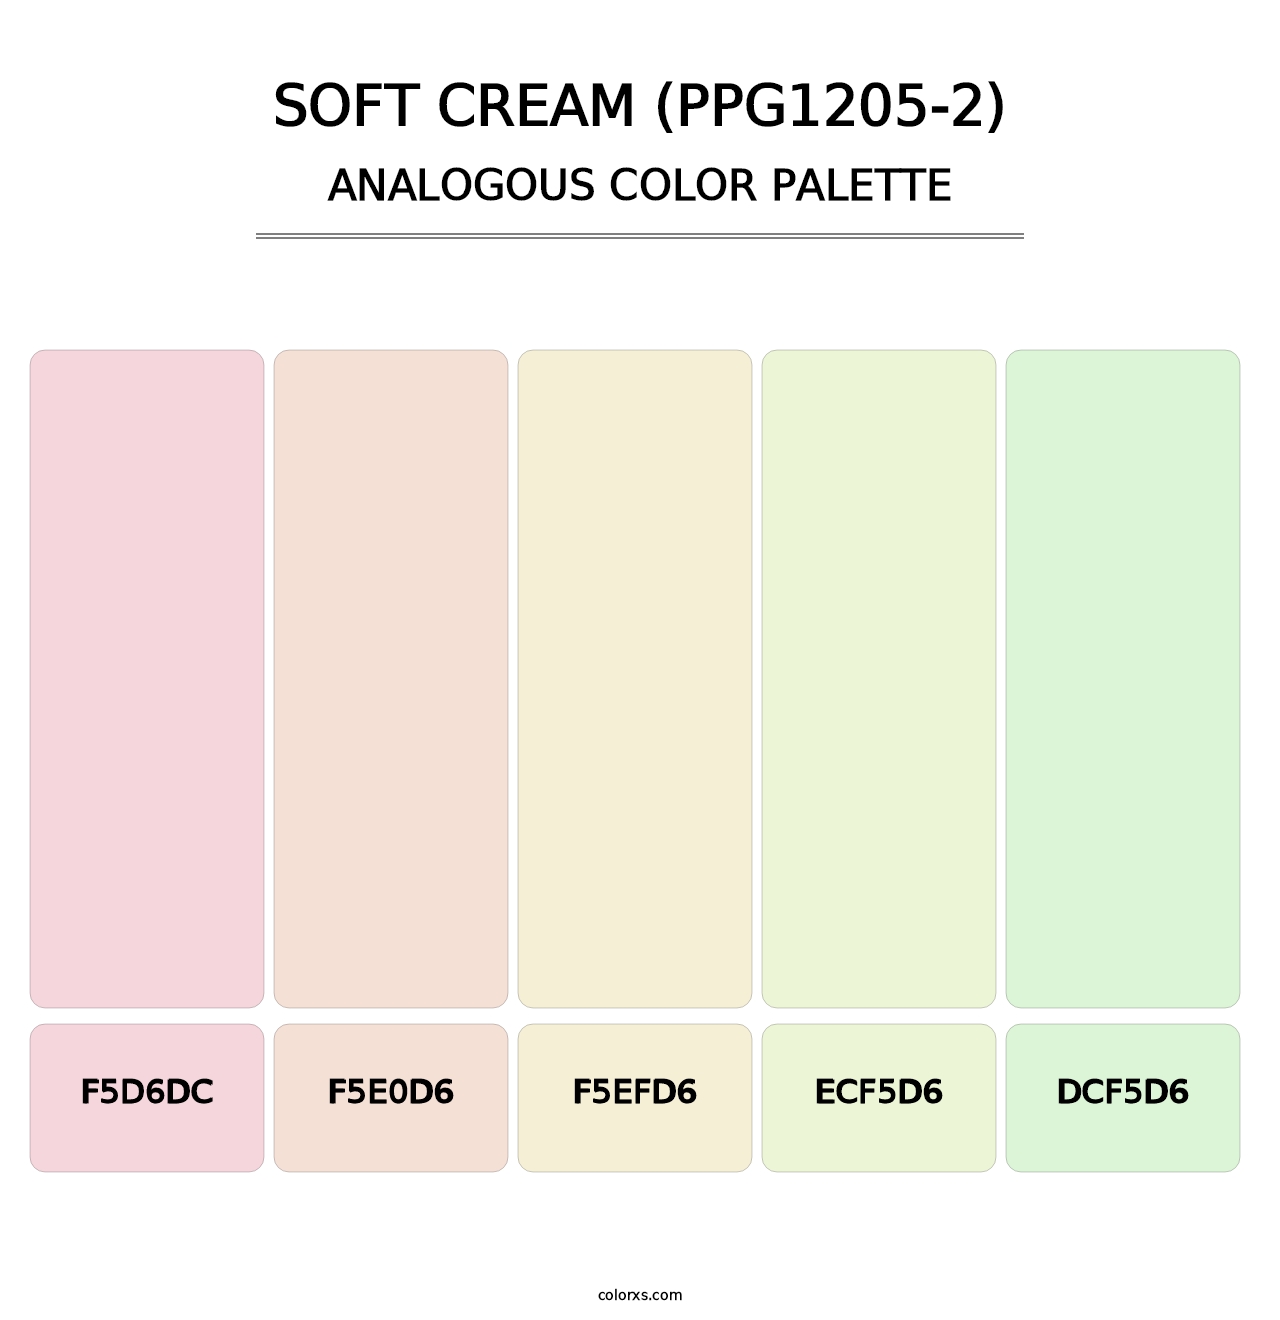 Soft Cream (PPG1205-2) - Analogous Color Palette